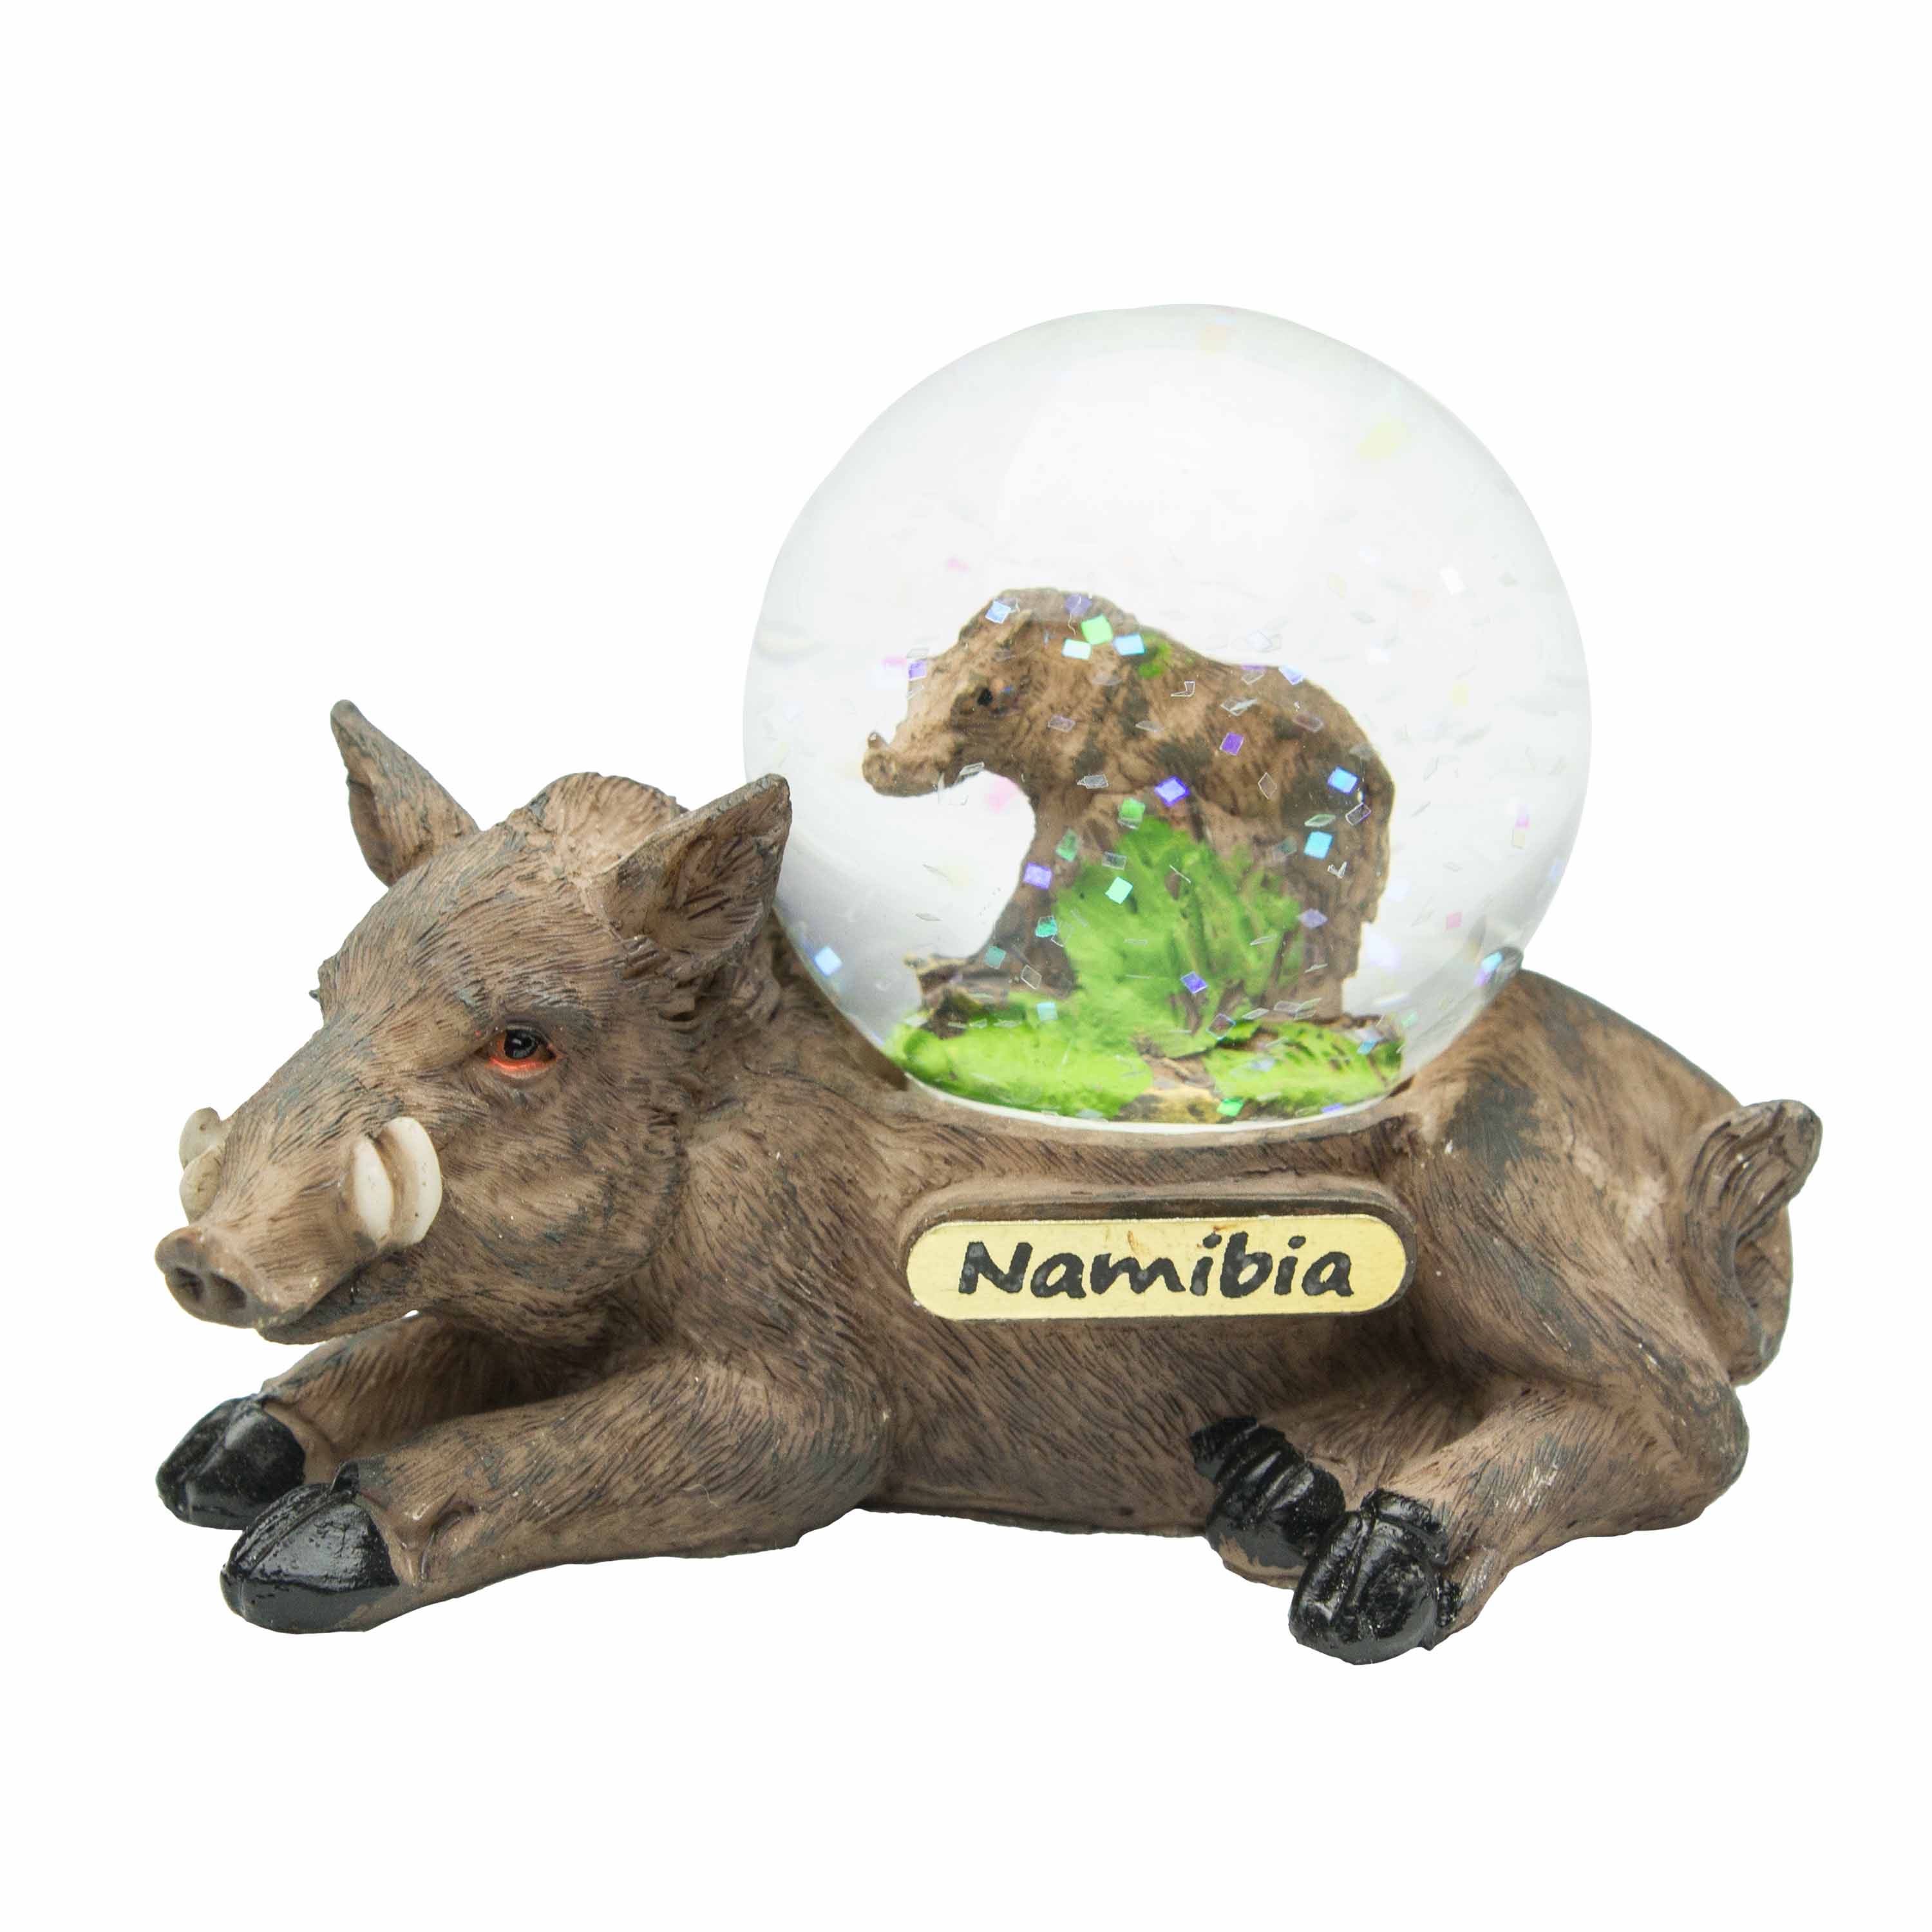 Snow Globe - Namibia Warthog